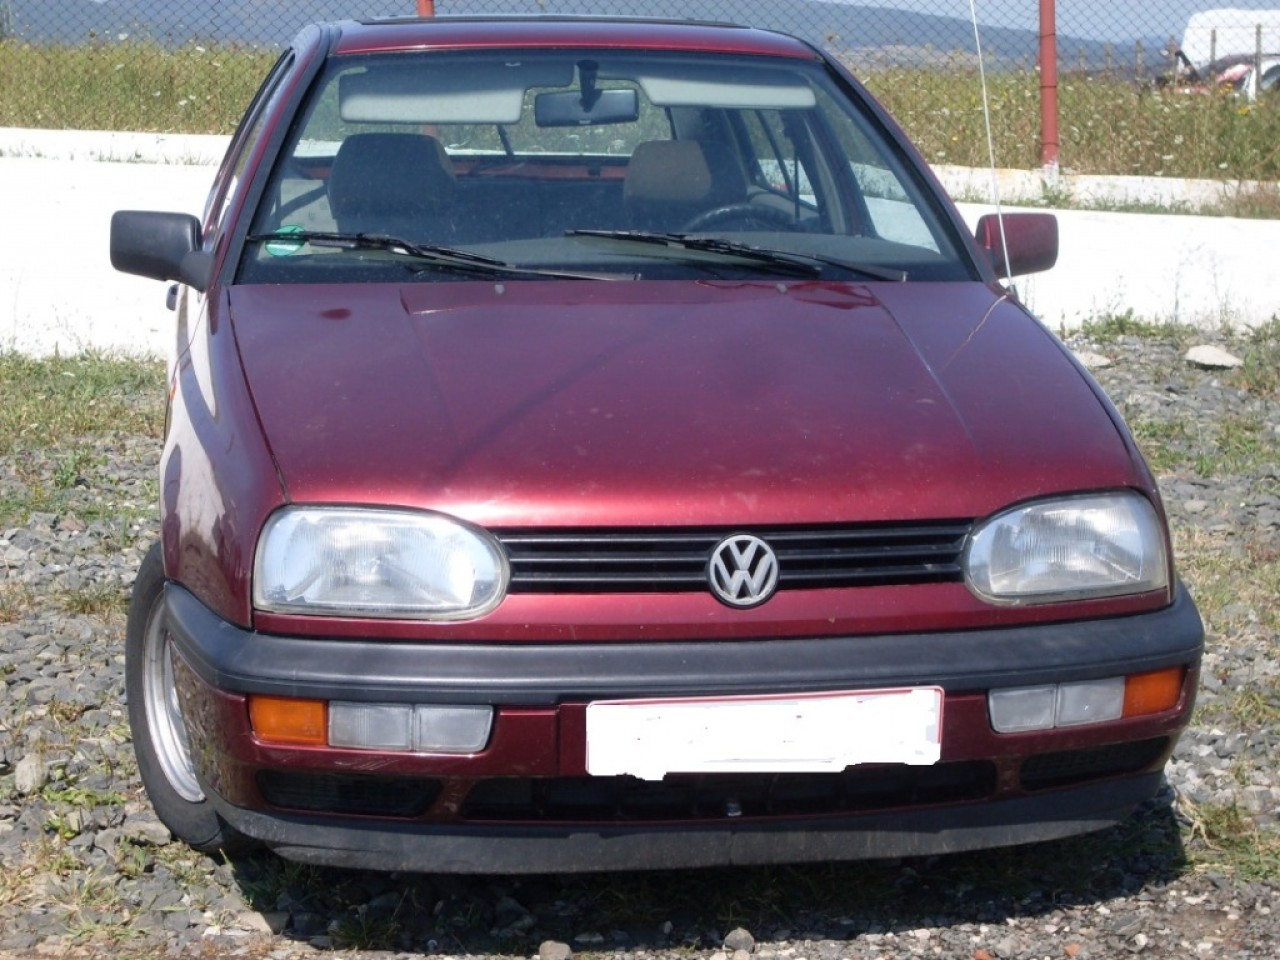 POMPA APA VW GOLF 3 , 1.8 BENZINA 55KW 75CP , FAB. 1991 - 1999 ZXYW2018ION  #41921008